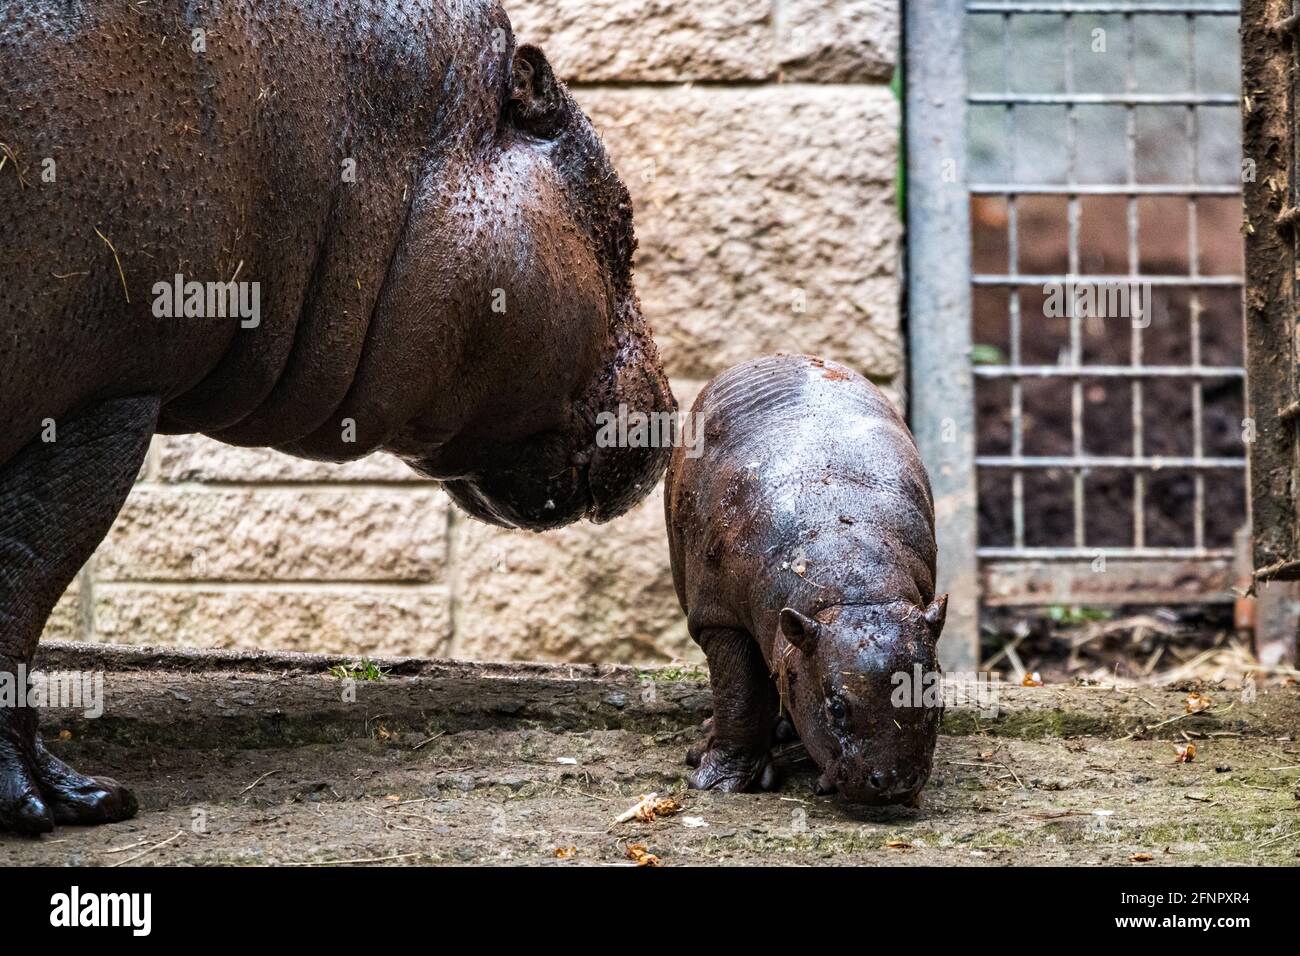 Édimbourg, Royaume-Uni. Mar 18 mai 2021. Le zoo d'Édimbourg célèbre  l'arrivée d'un bébé Pygmy Hippo appelé Amara, né le 17 avril 2021. Amara  est montré ici avec sa mère Gloria. Amara a